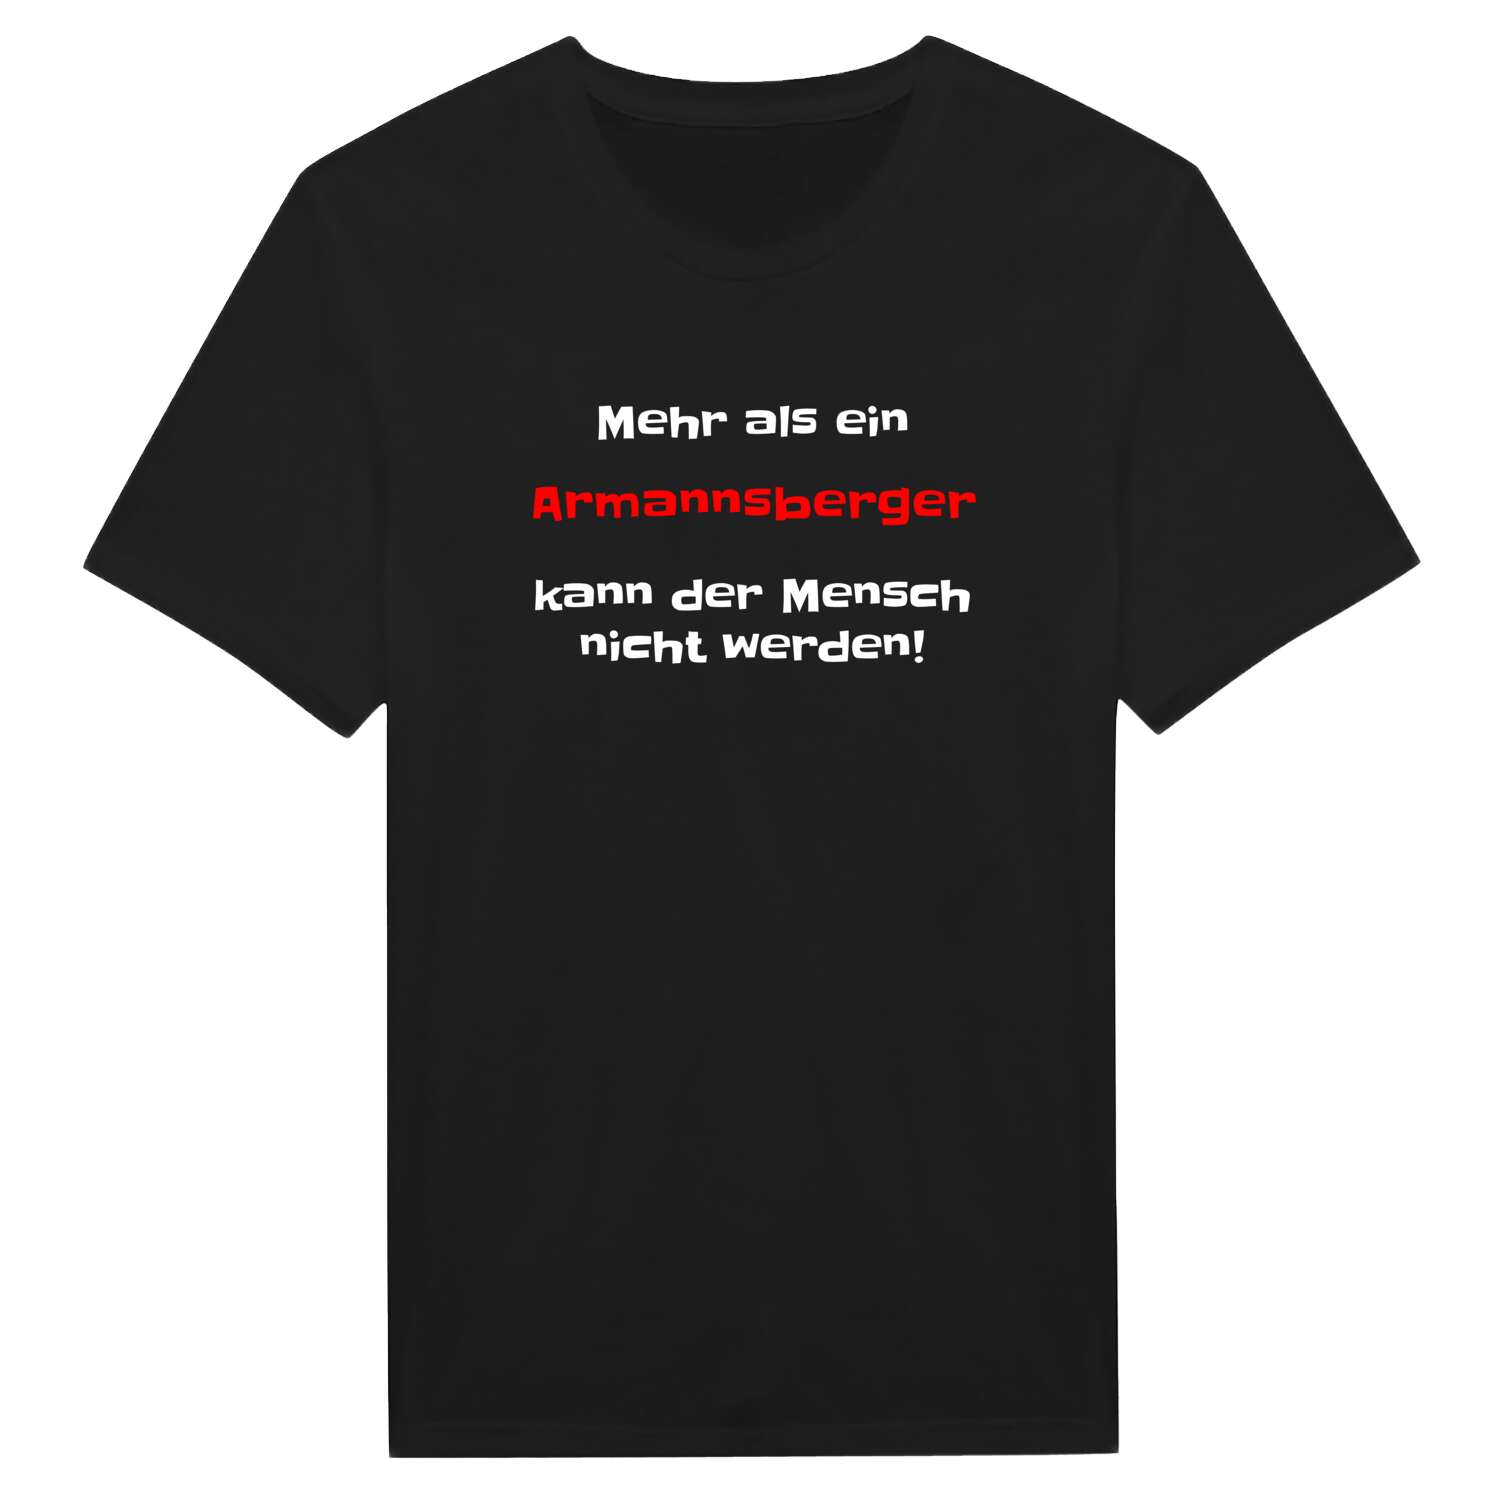 Armannsberg T-Shirt »Mehr als ein«